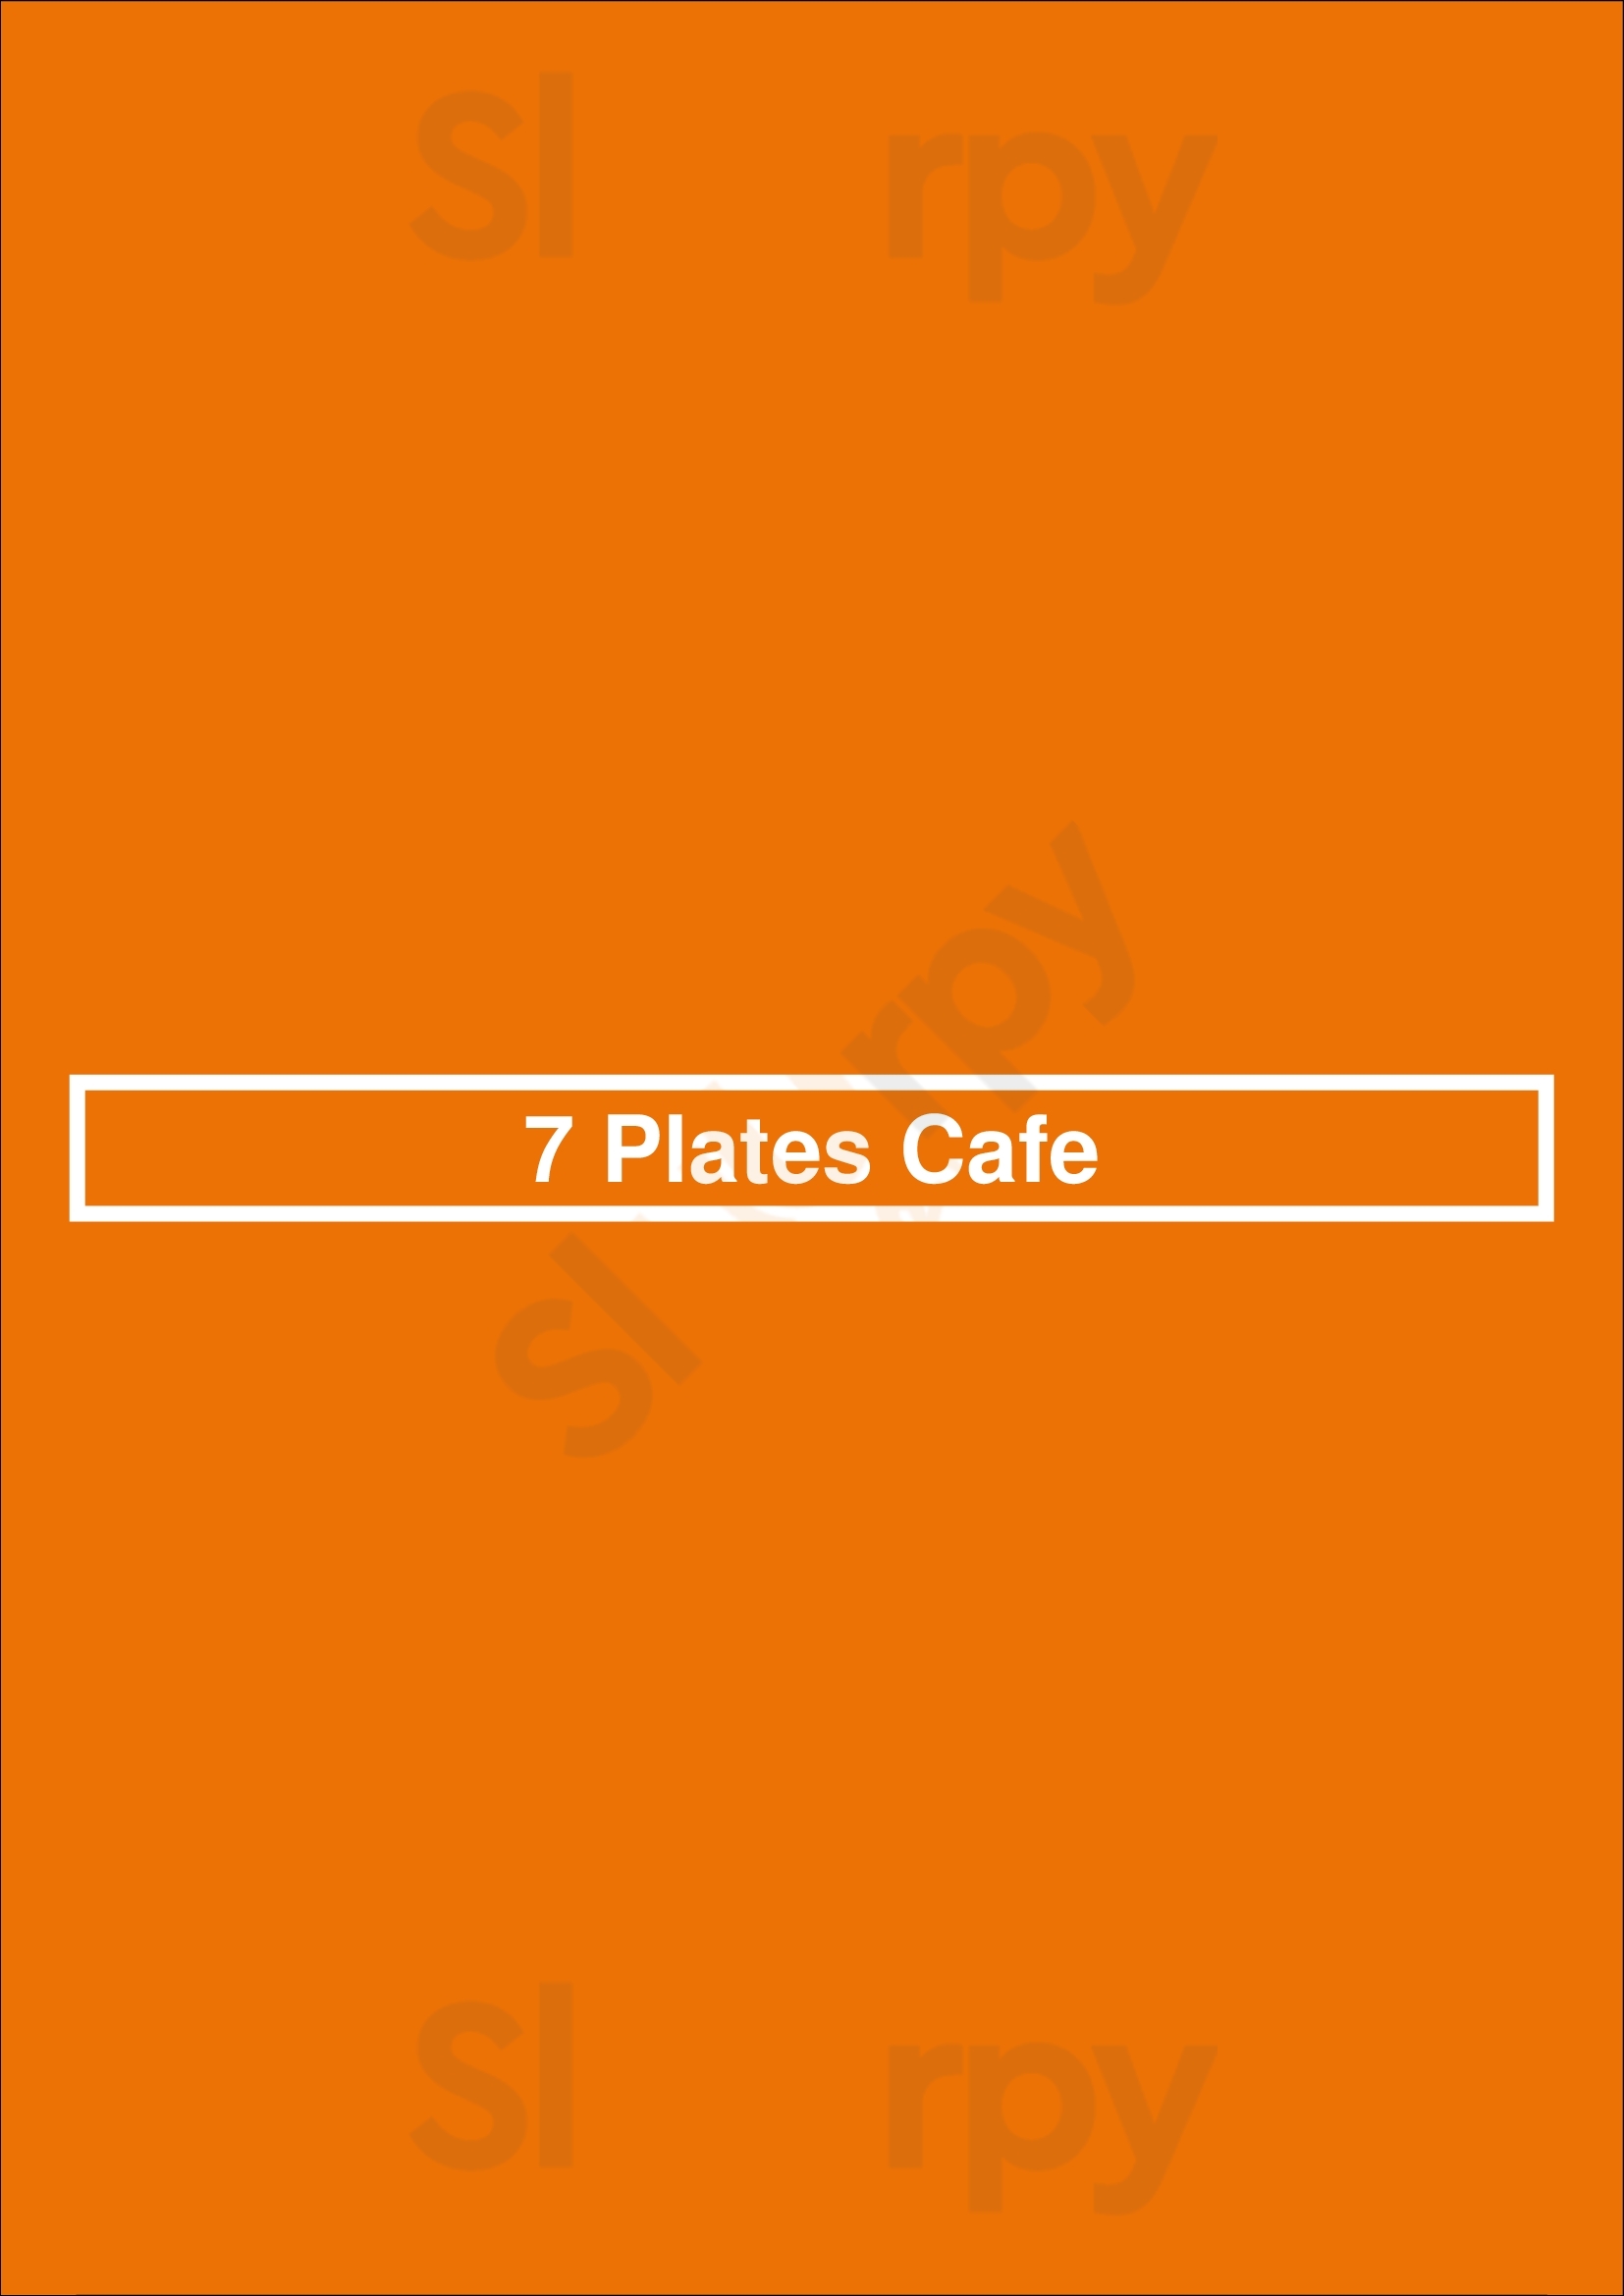 7 Plates Cafe Chicago Menu - 1